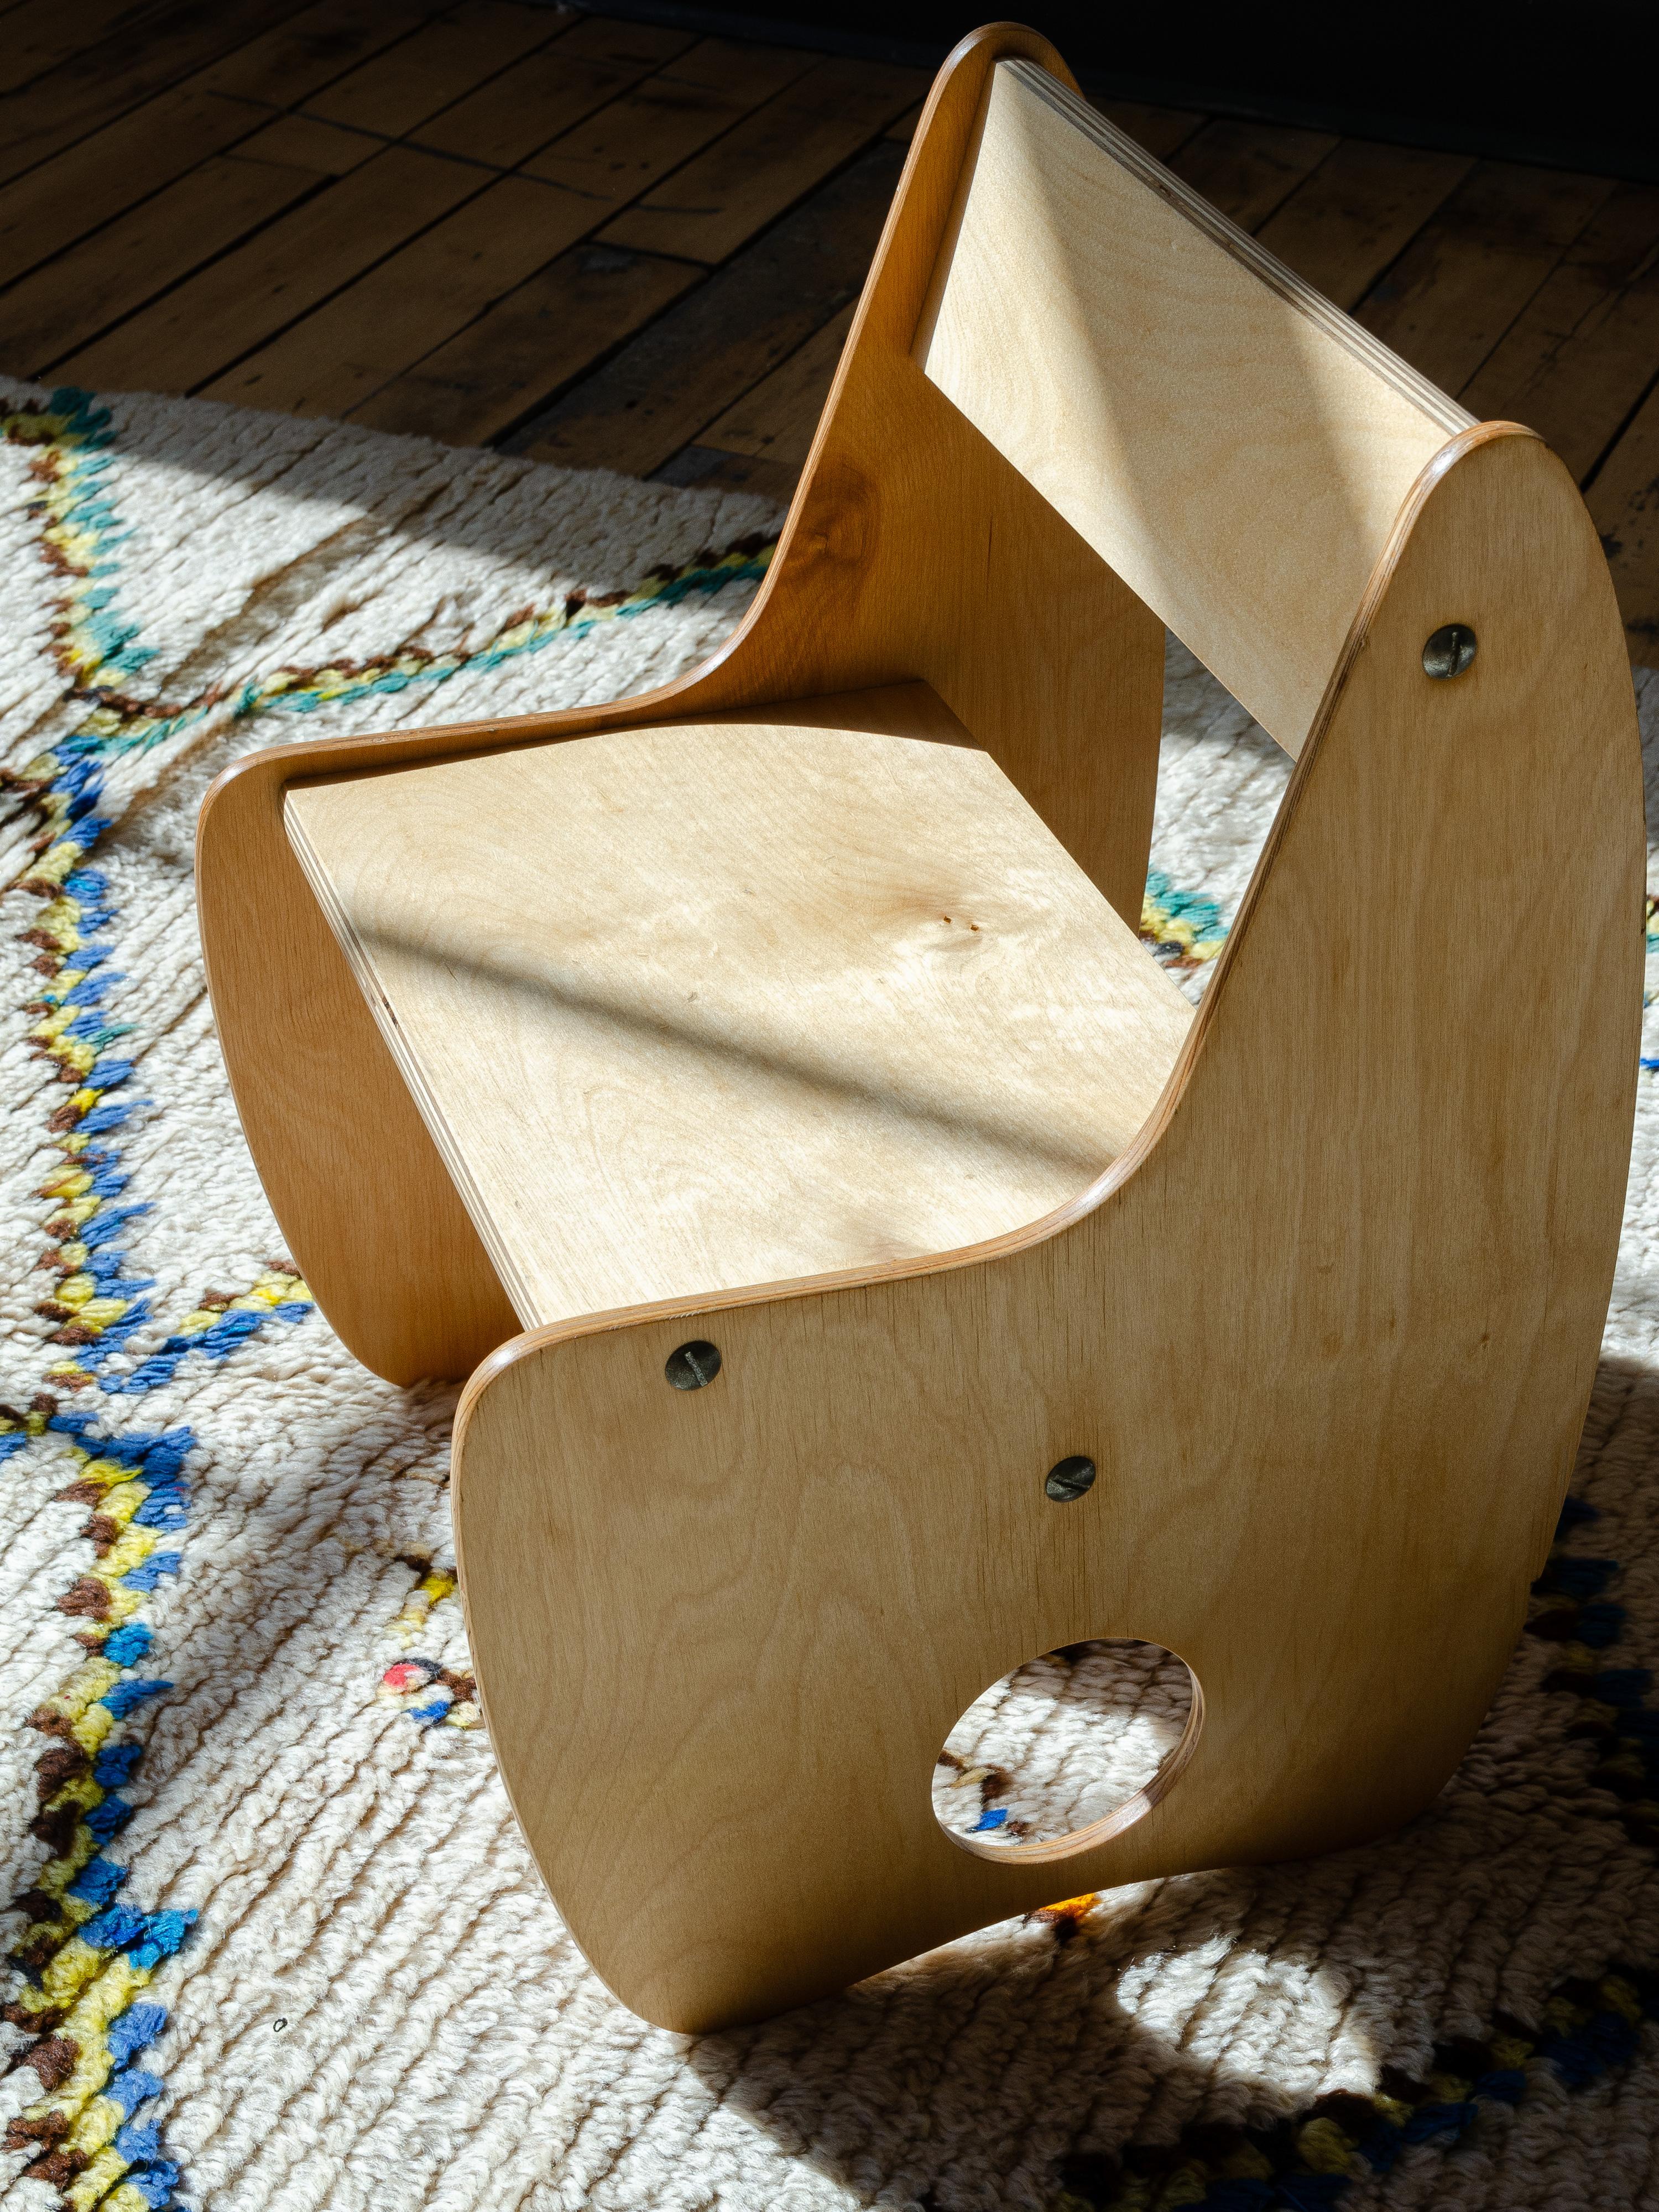 This children's mid-century chair, was designed post-war German architects Albrecht Lange and Hans Mitzlaff. The 